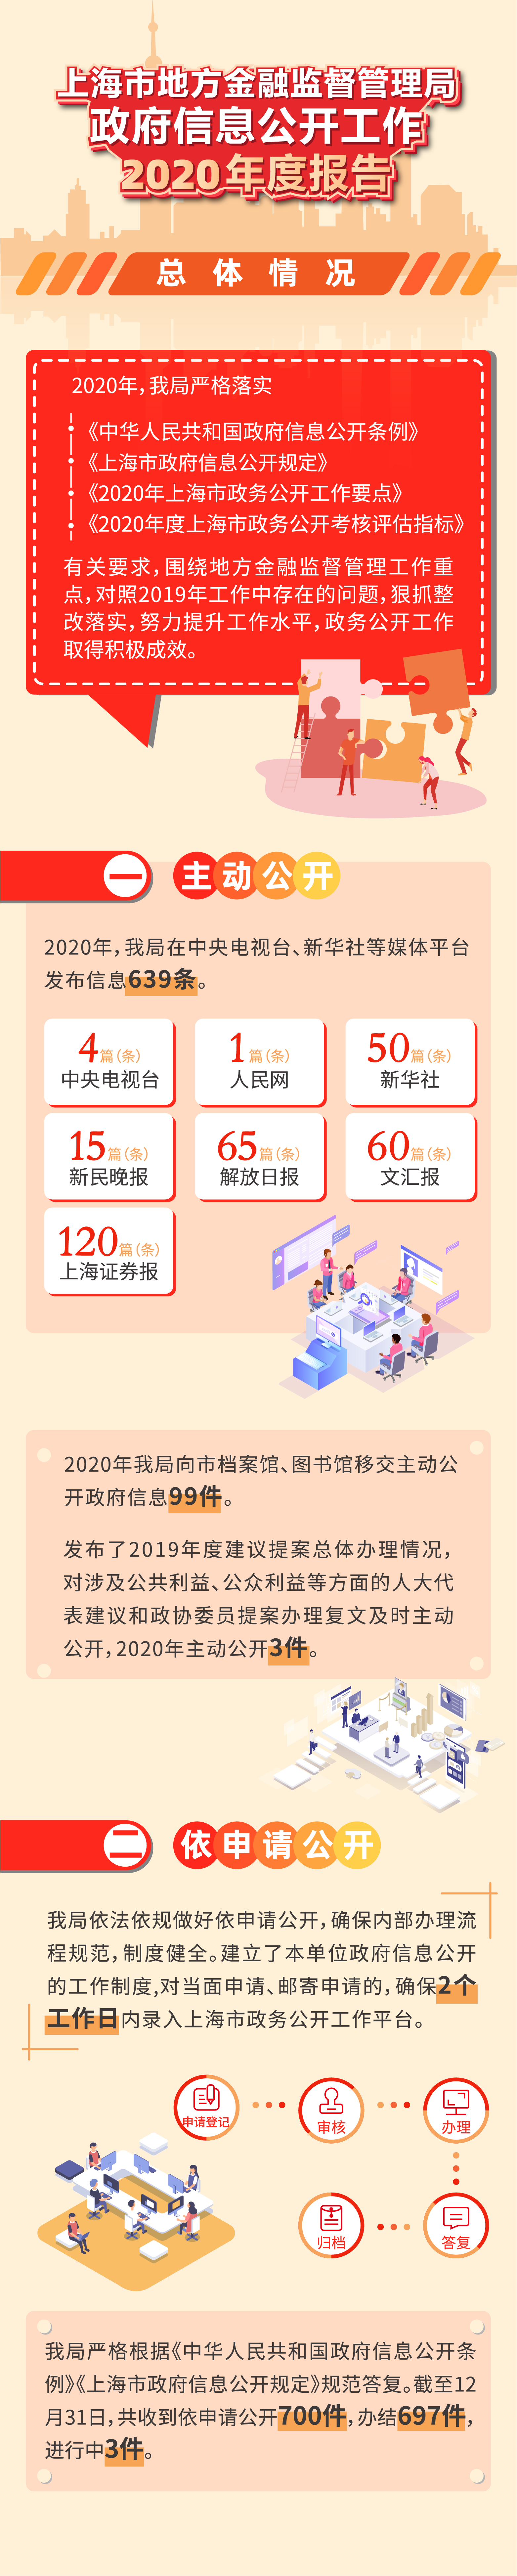 2020上海市地方金融监督管理局政府信息公开年度报告图文解读-1.png